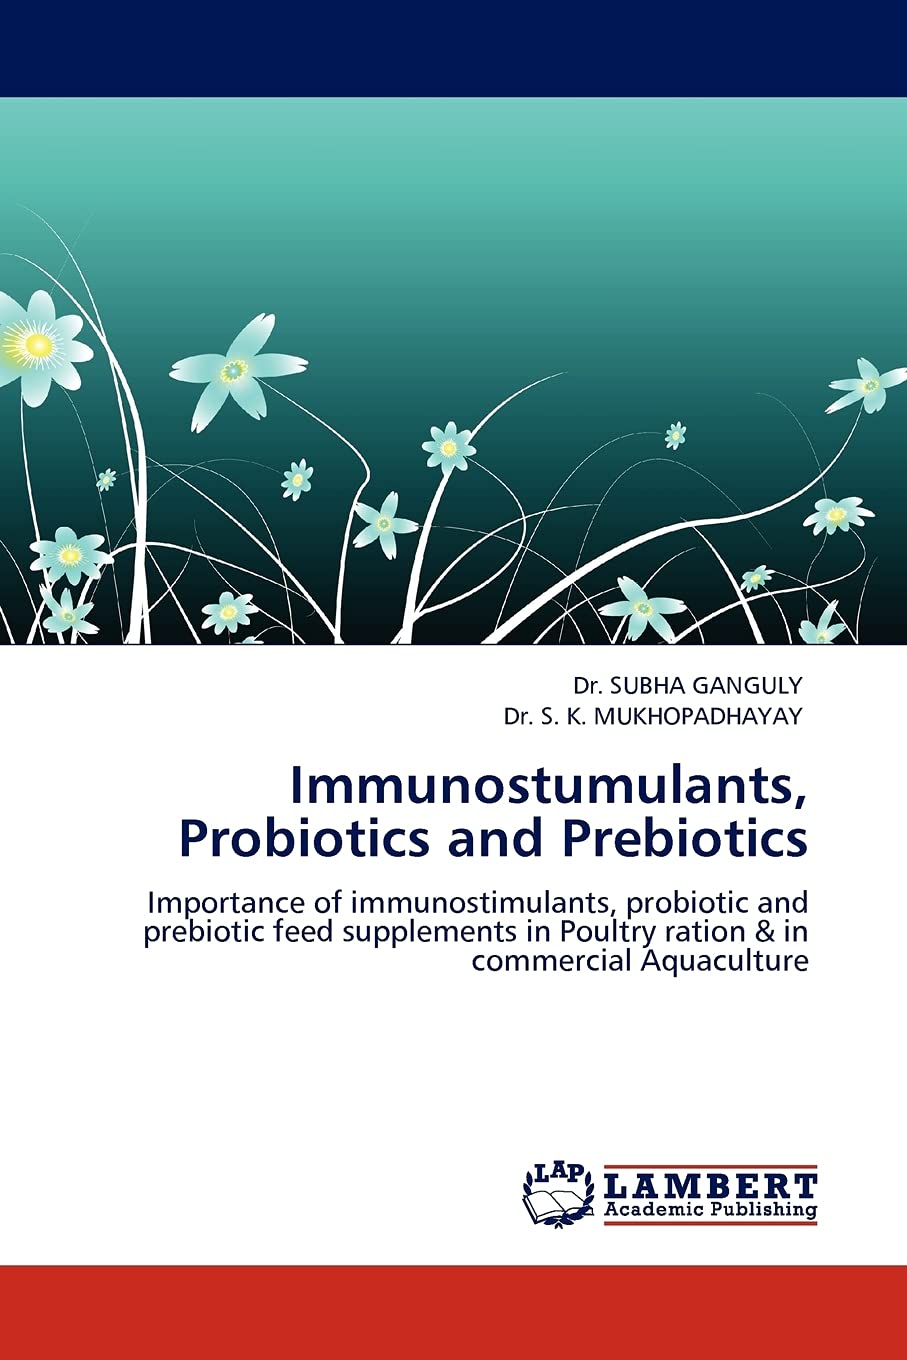 Immunostimulants, Probiotics, and Prebi...